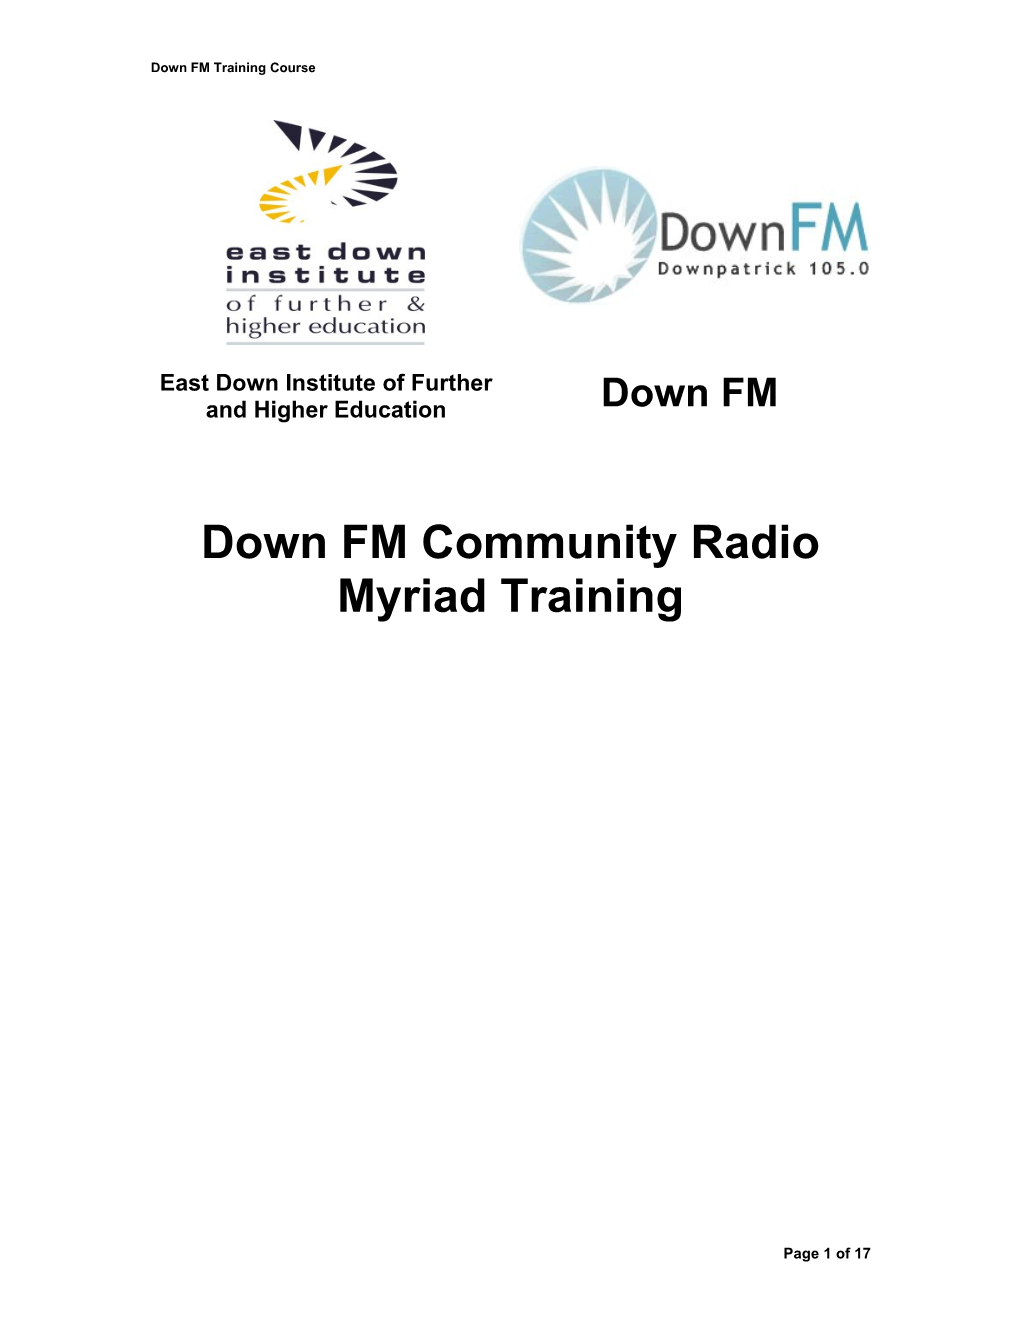 Down FM Community Radio Myriad Training